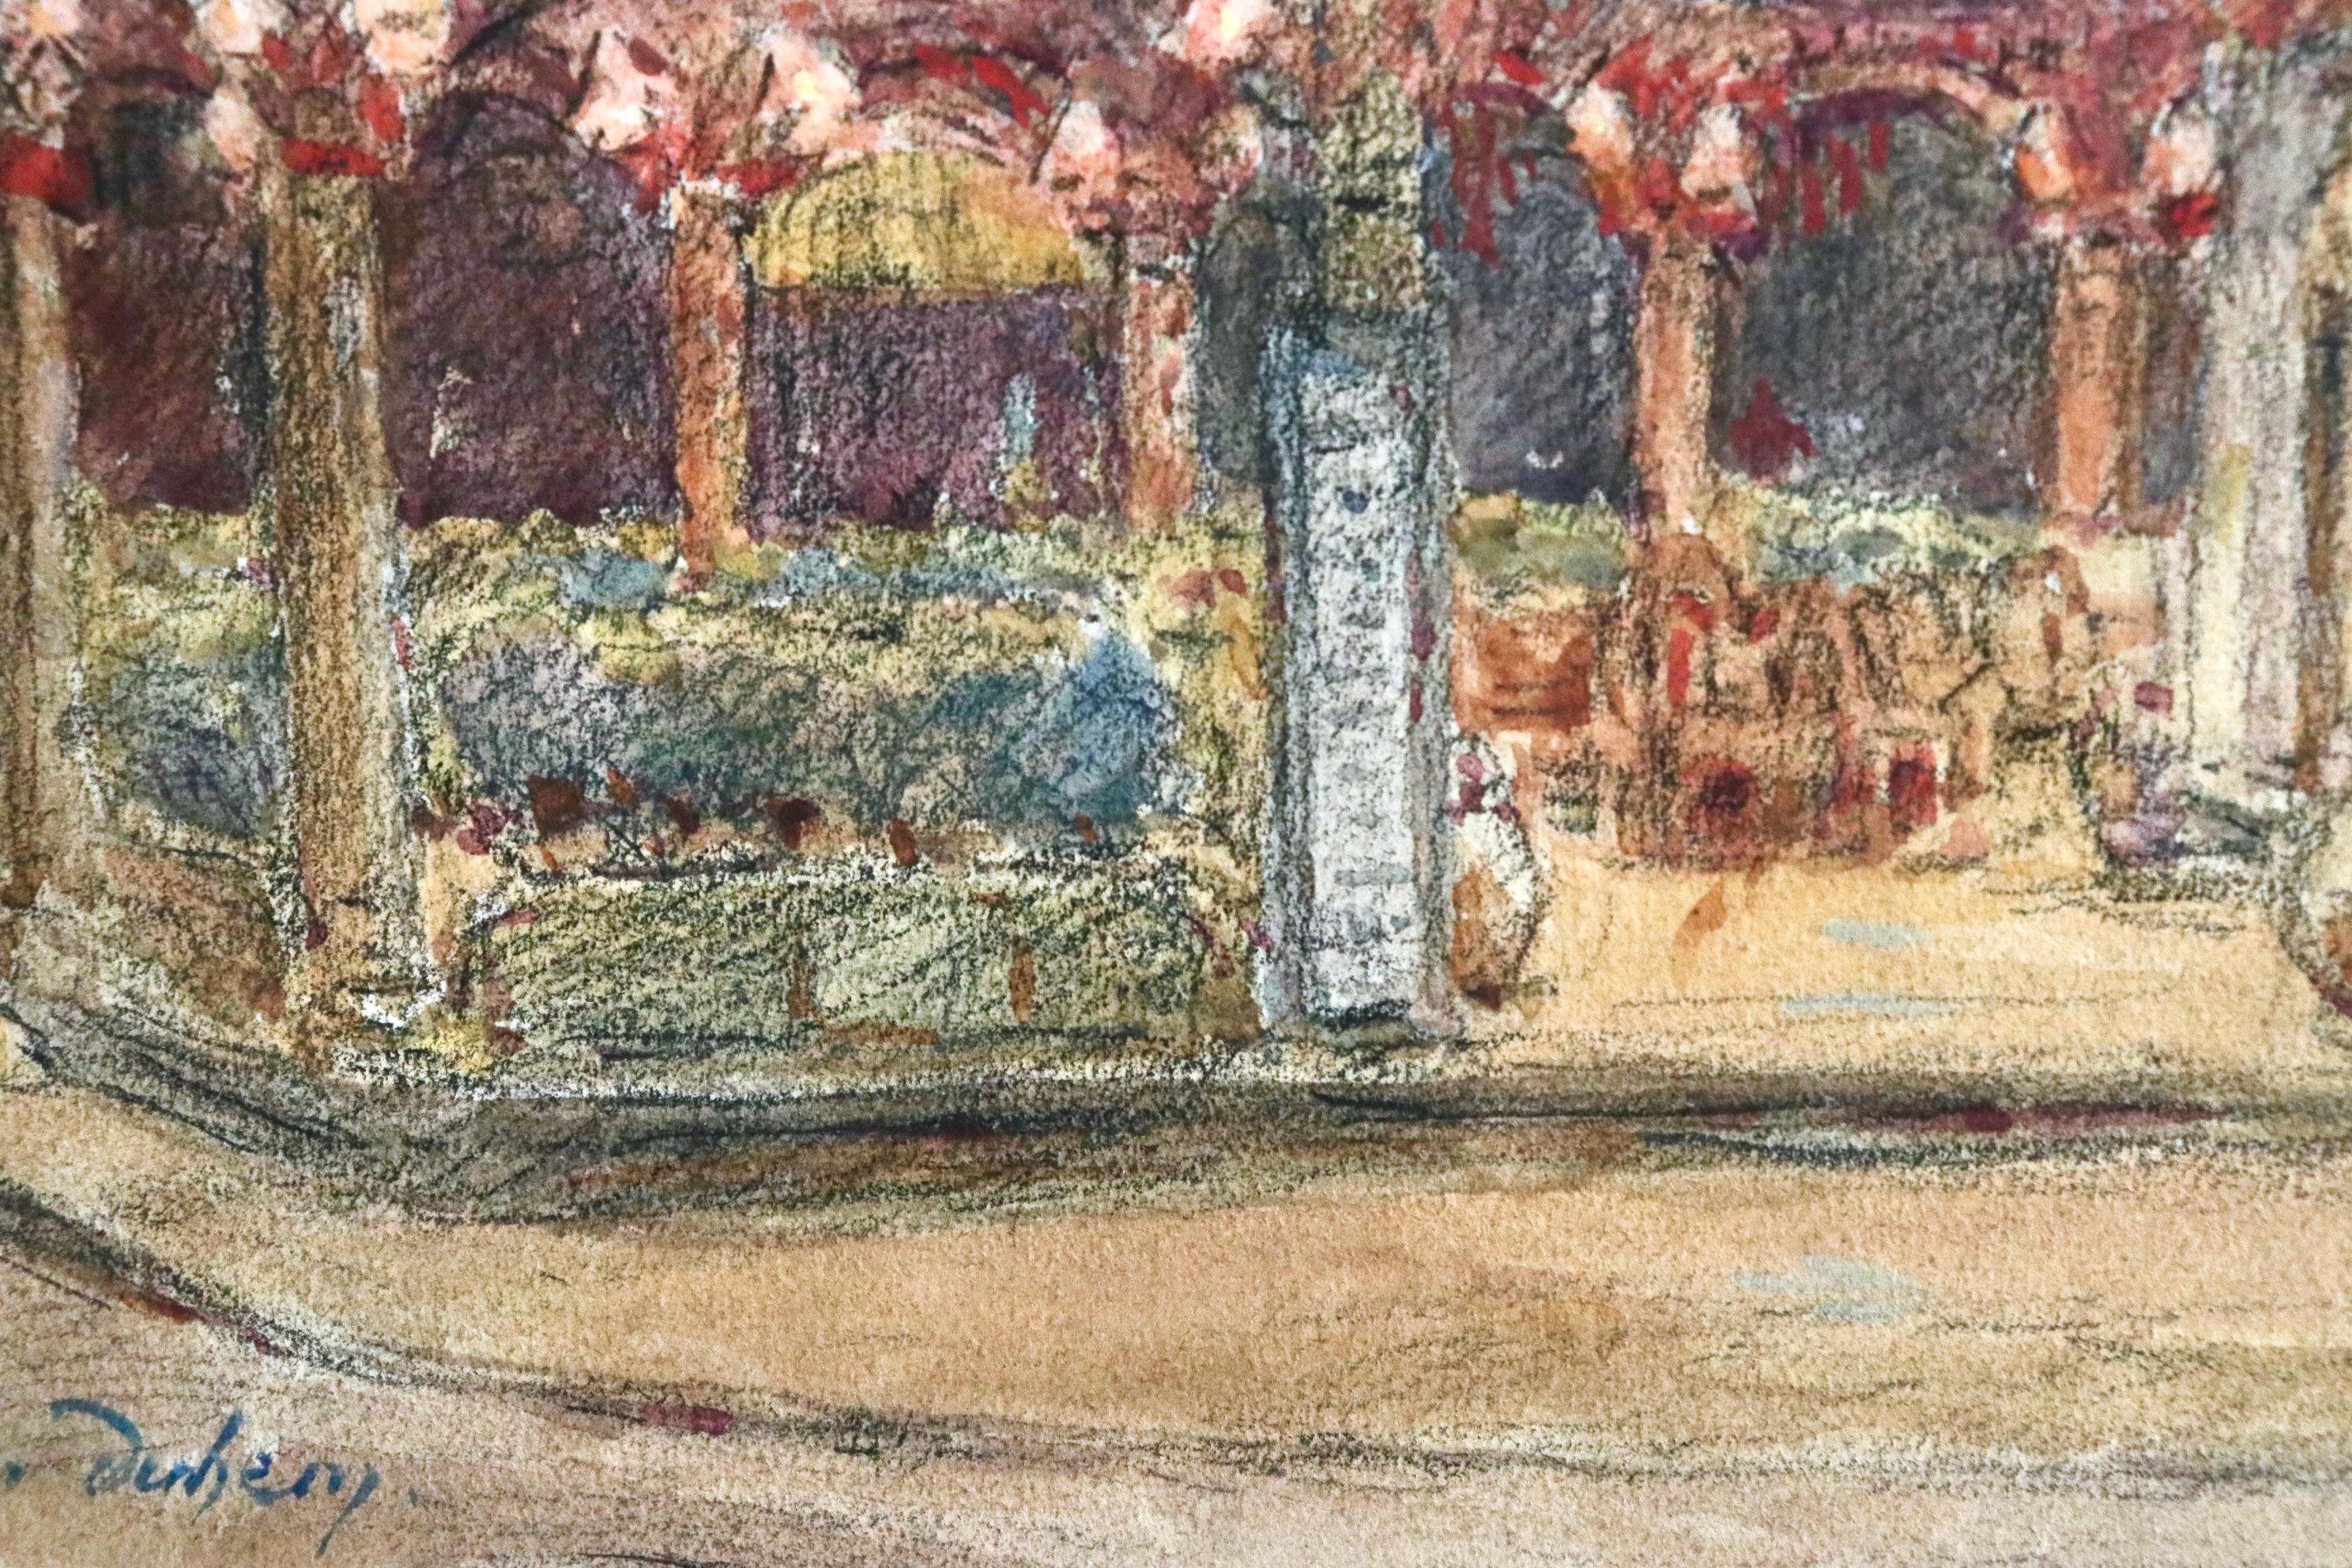 Wunderschönes Aquarell auf Papier um 1920 von Henri Duhem, das eine nächtliche Café-Szene mit einer von Laternen beleuchteten Terrasse zeigt. Signiert unten links. Dieses Gemälde ist derzeit nicht gerahmt, aber ein passender Rahmen kann bei Bedarf